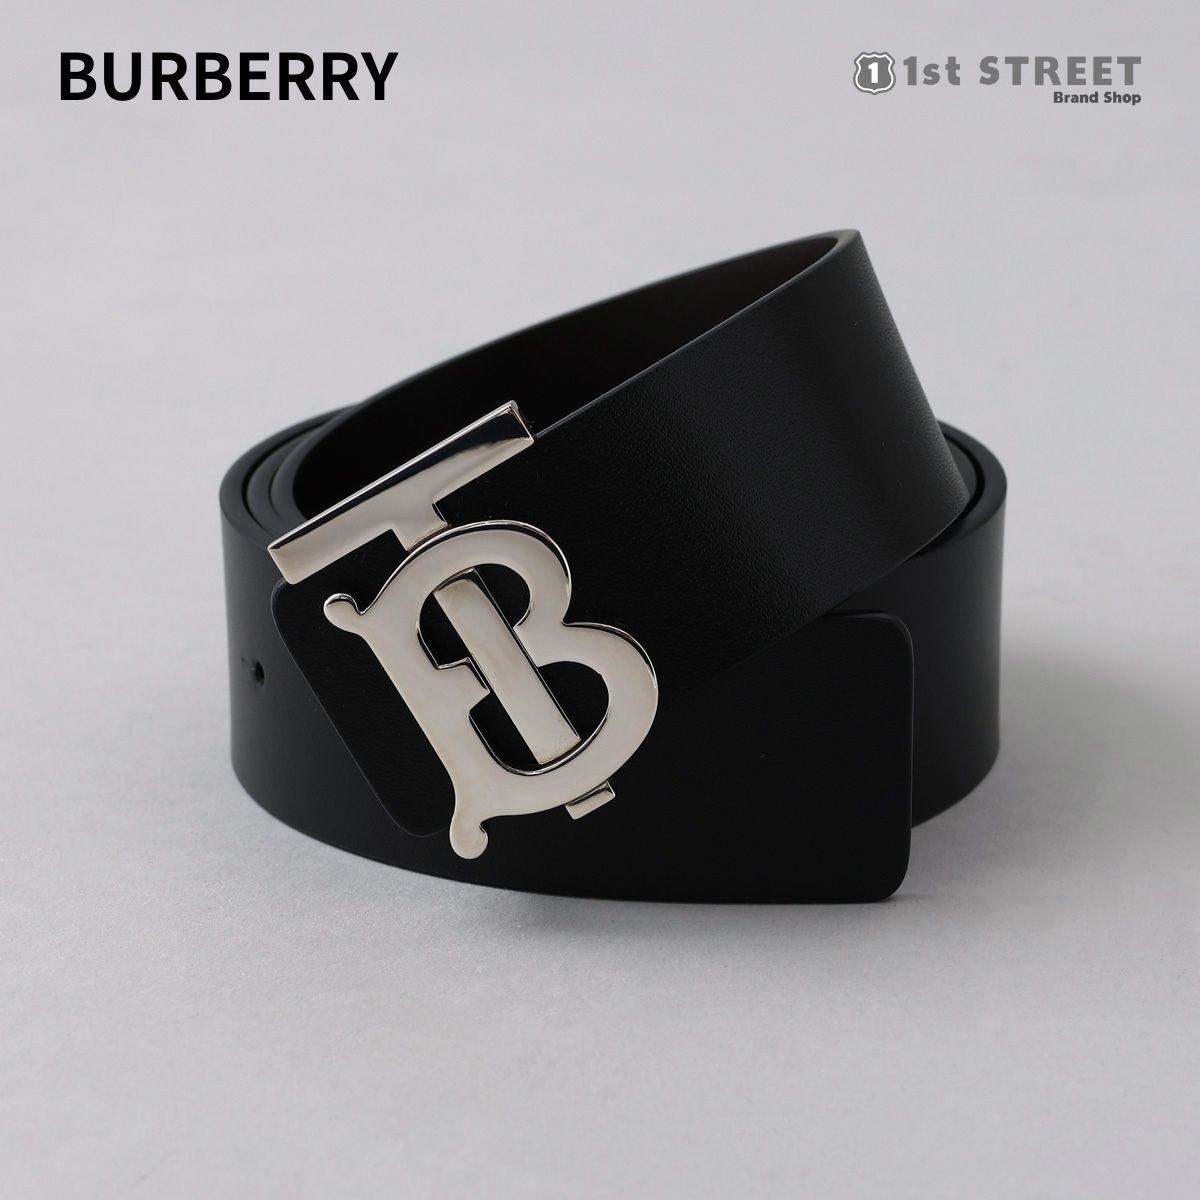 バーバリー BURBERRY ベルト 90 ブラック 黒 TBロゴ レザー 人気 おしゃれ ブランド 8009812 MEN'S BELTSBLACK メンズ